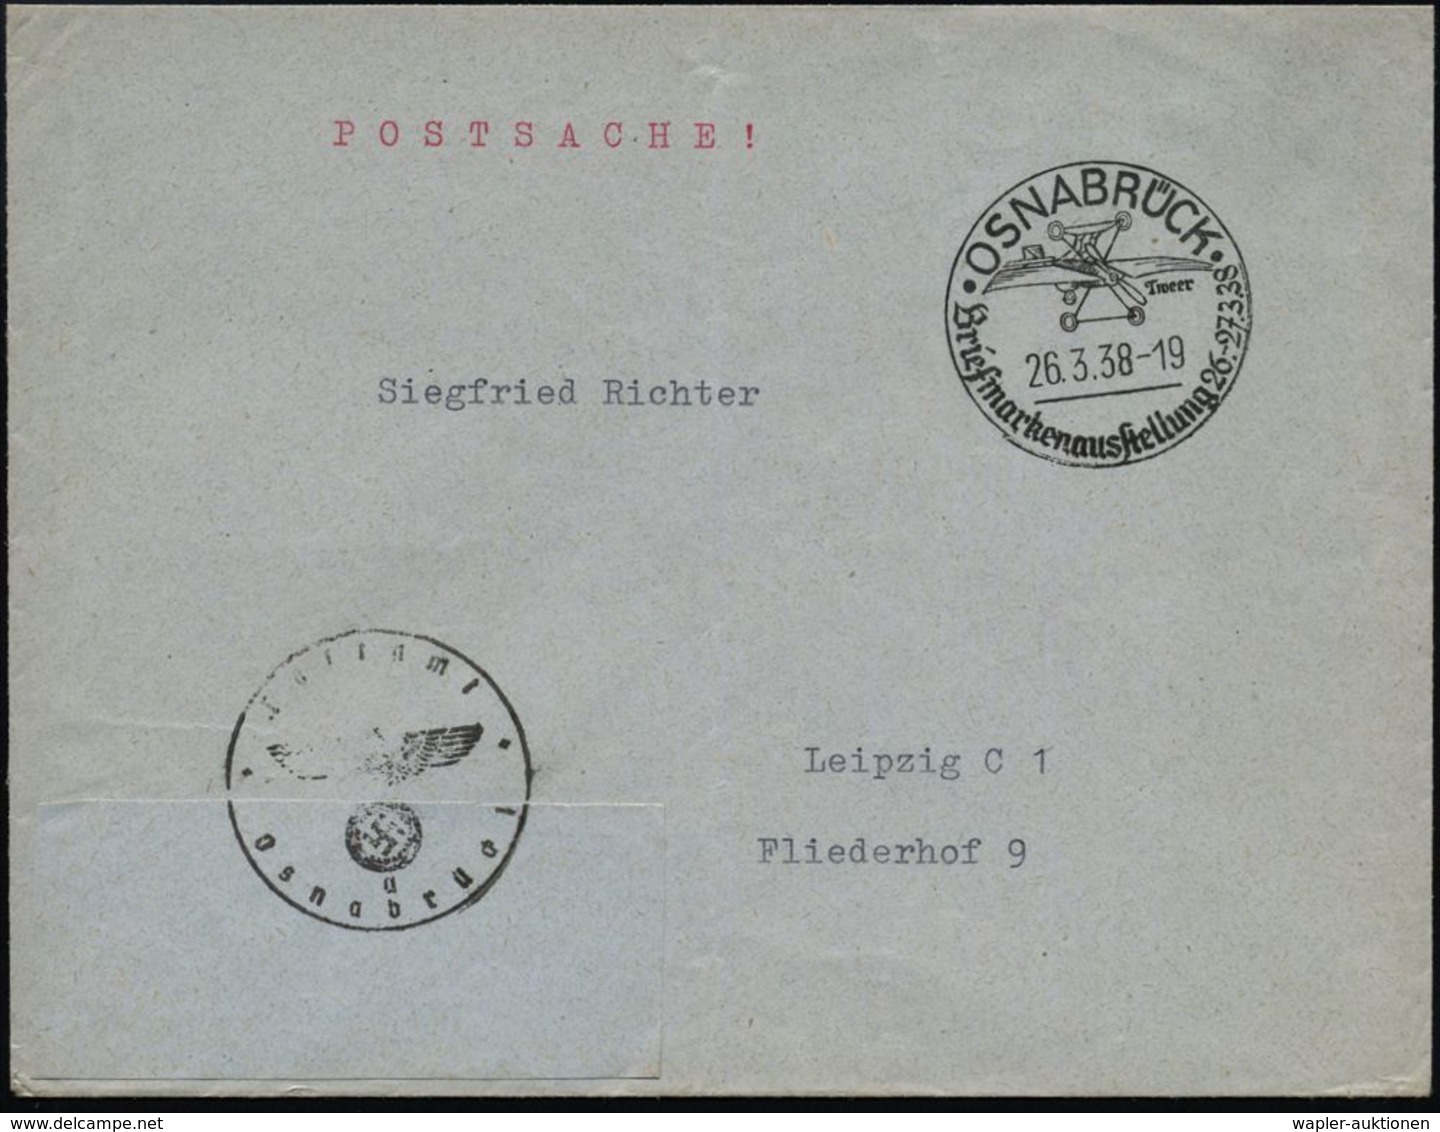 FLUGZEUGINDUSTRIE & -TYPEN : OSNABRÜCK/ Tweer/ Briefmarkenausstellung 1938 (26.3.) SSt = Pionier-Flugzeug "Tweer" + Schw - Flugzeuge